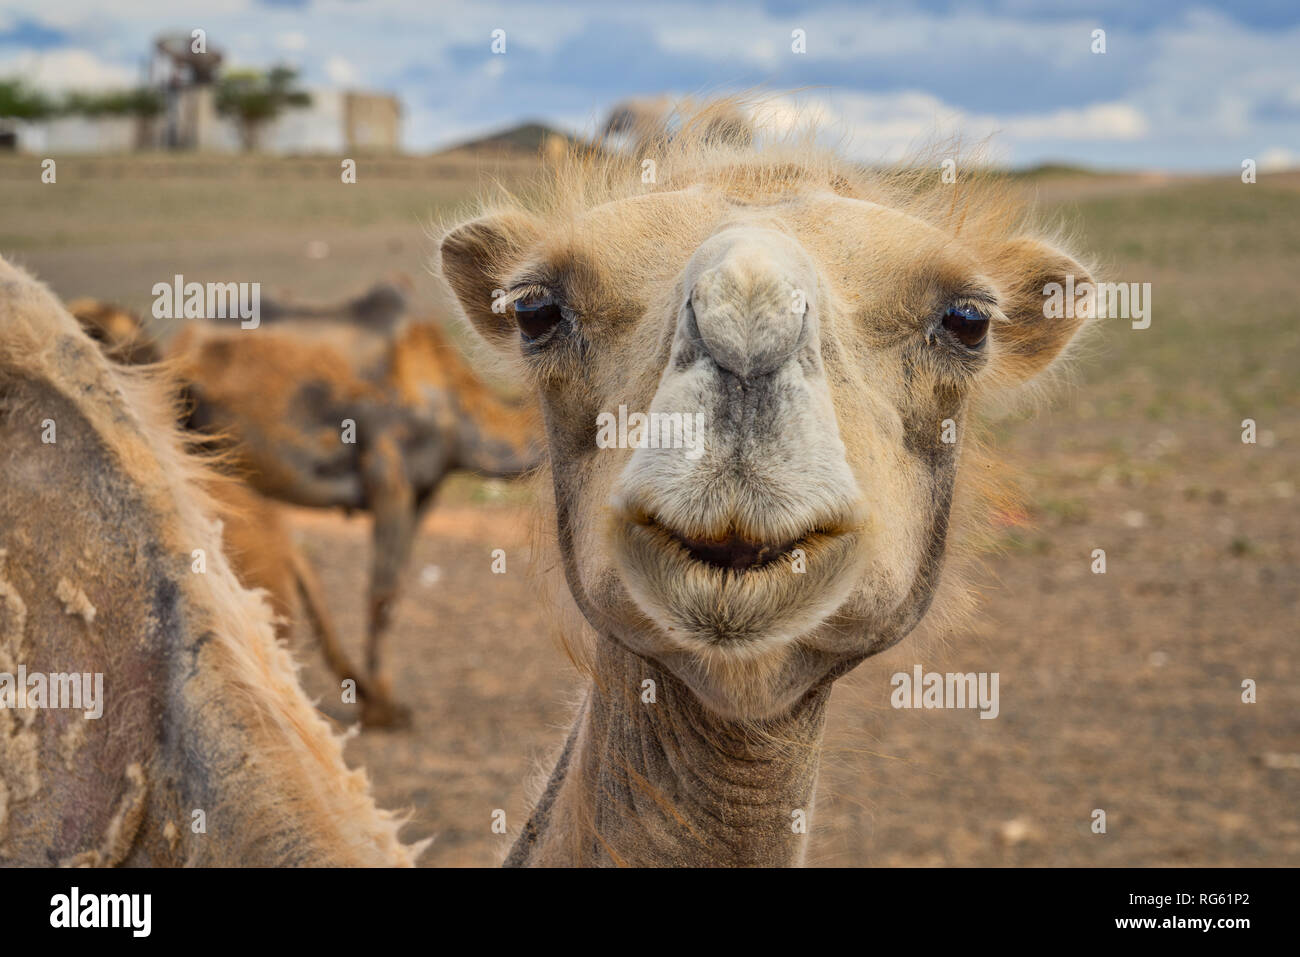 Bactrian camel in the desert, Gobi Desert, Bulgan, Mongolia Stock Photo